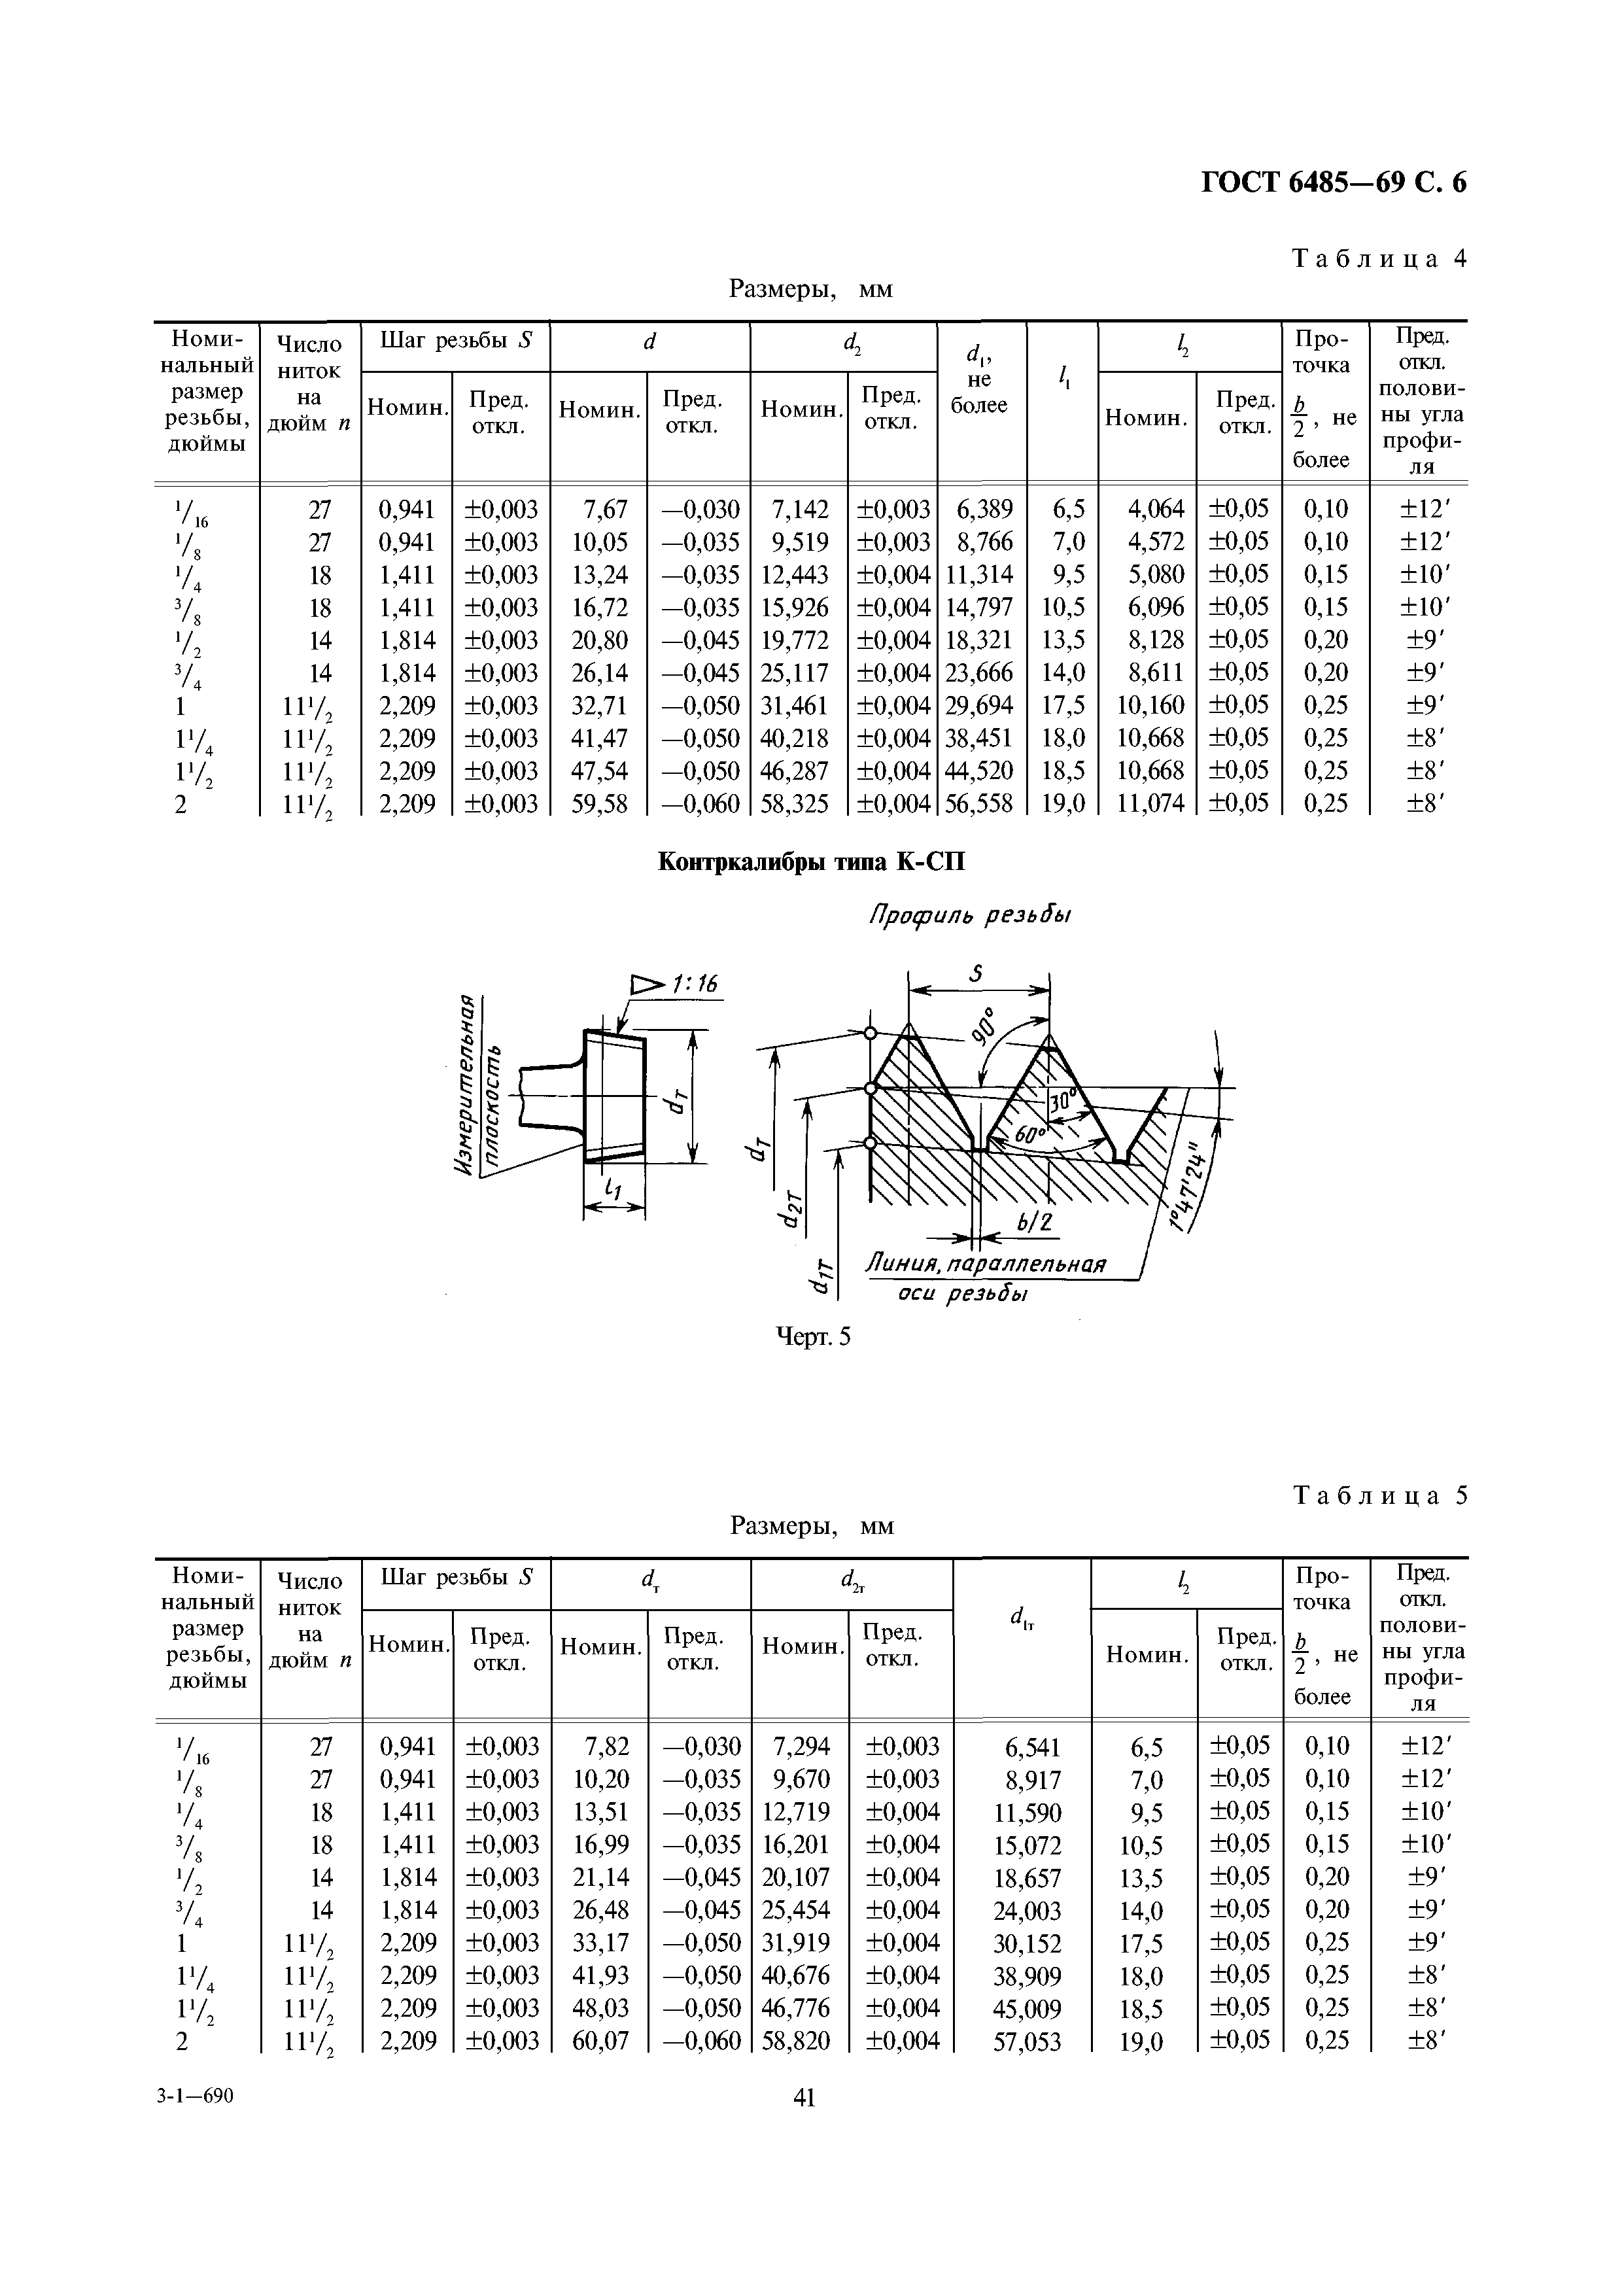  резьба размеры таблица: таблица, основные размеры и диаметры